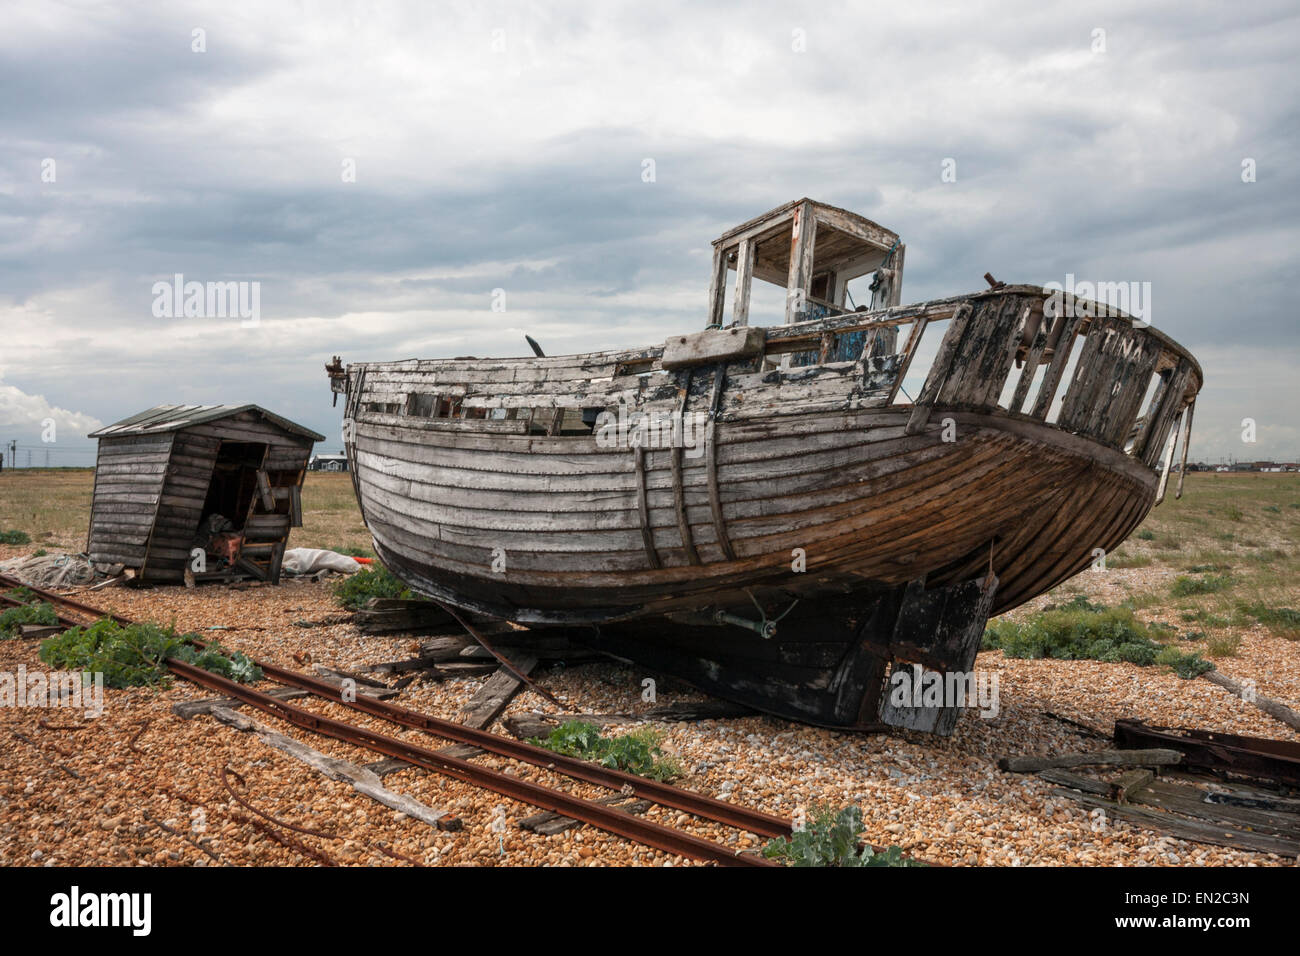 Abandonado naufragio del barco pesquero "Tina" y el mal estado de la antigua cabaña de pesca Dungeness Kent England Reino Unido Foto de stock